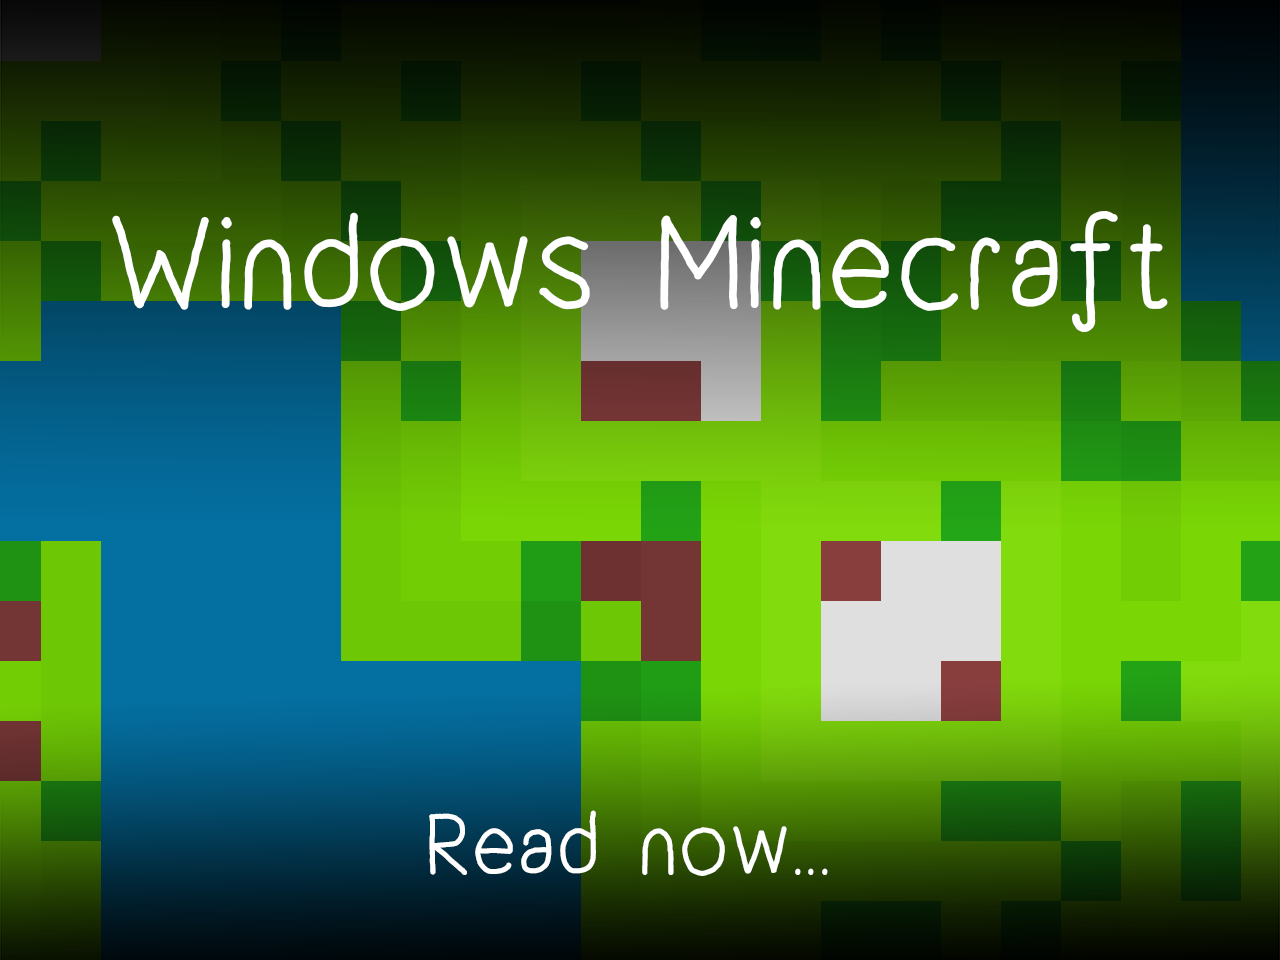 Windows Minecraft